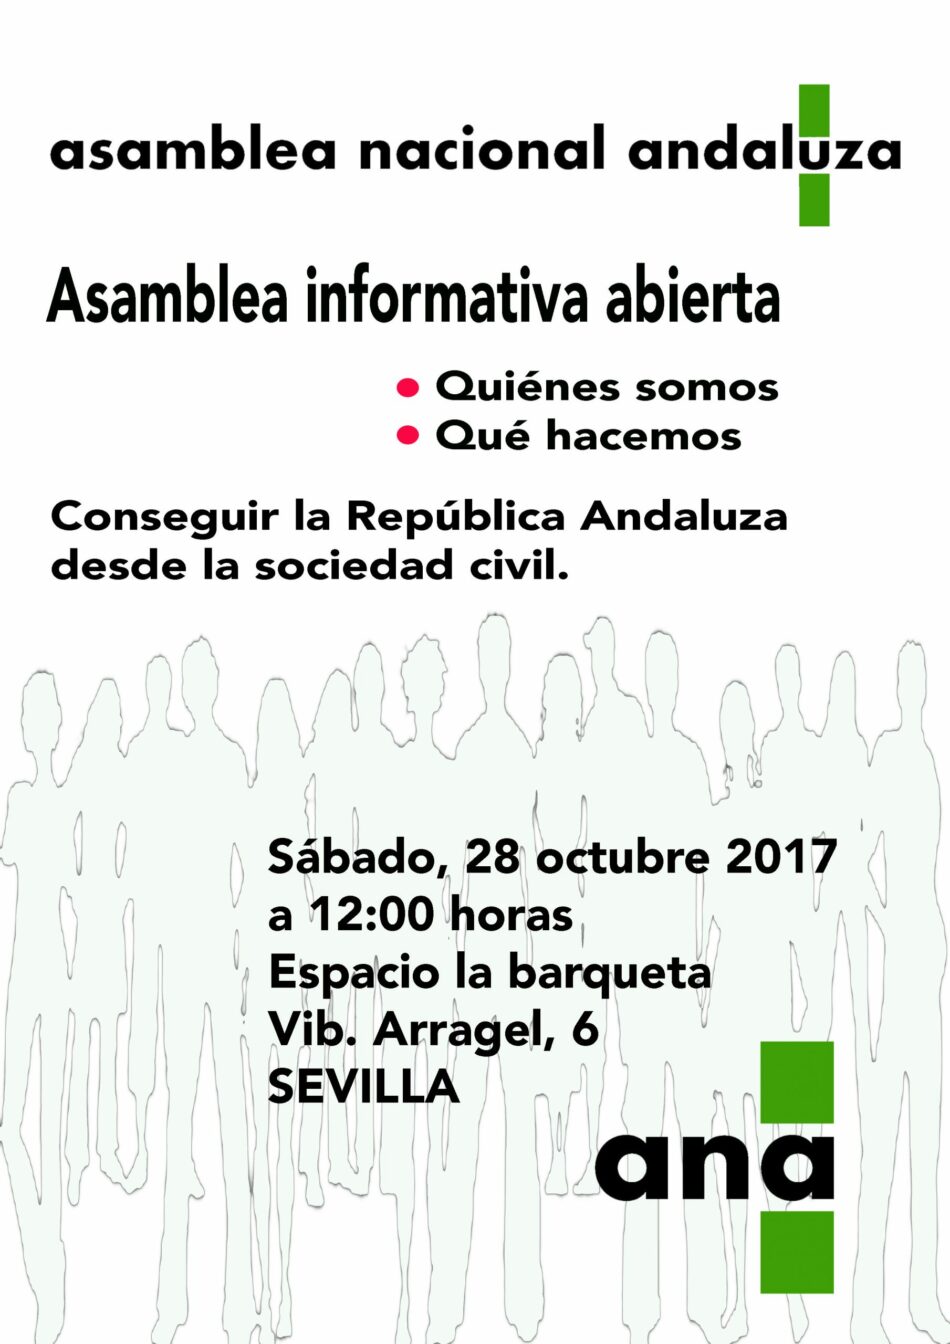 Actos de la Asamblea Nacional Andaluza en Sevilla y Barcelona